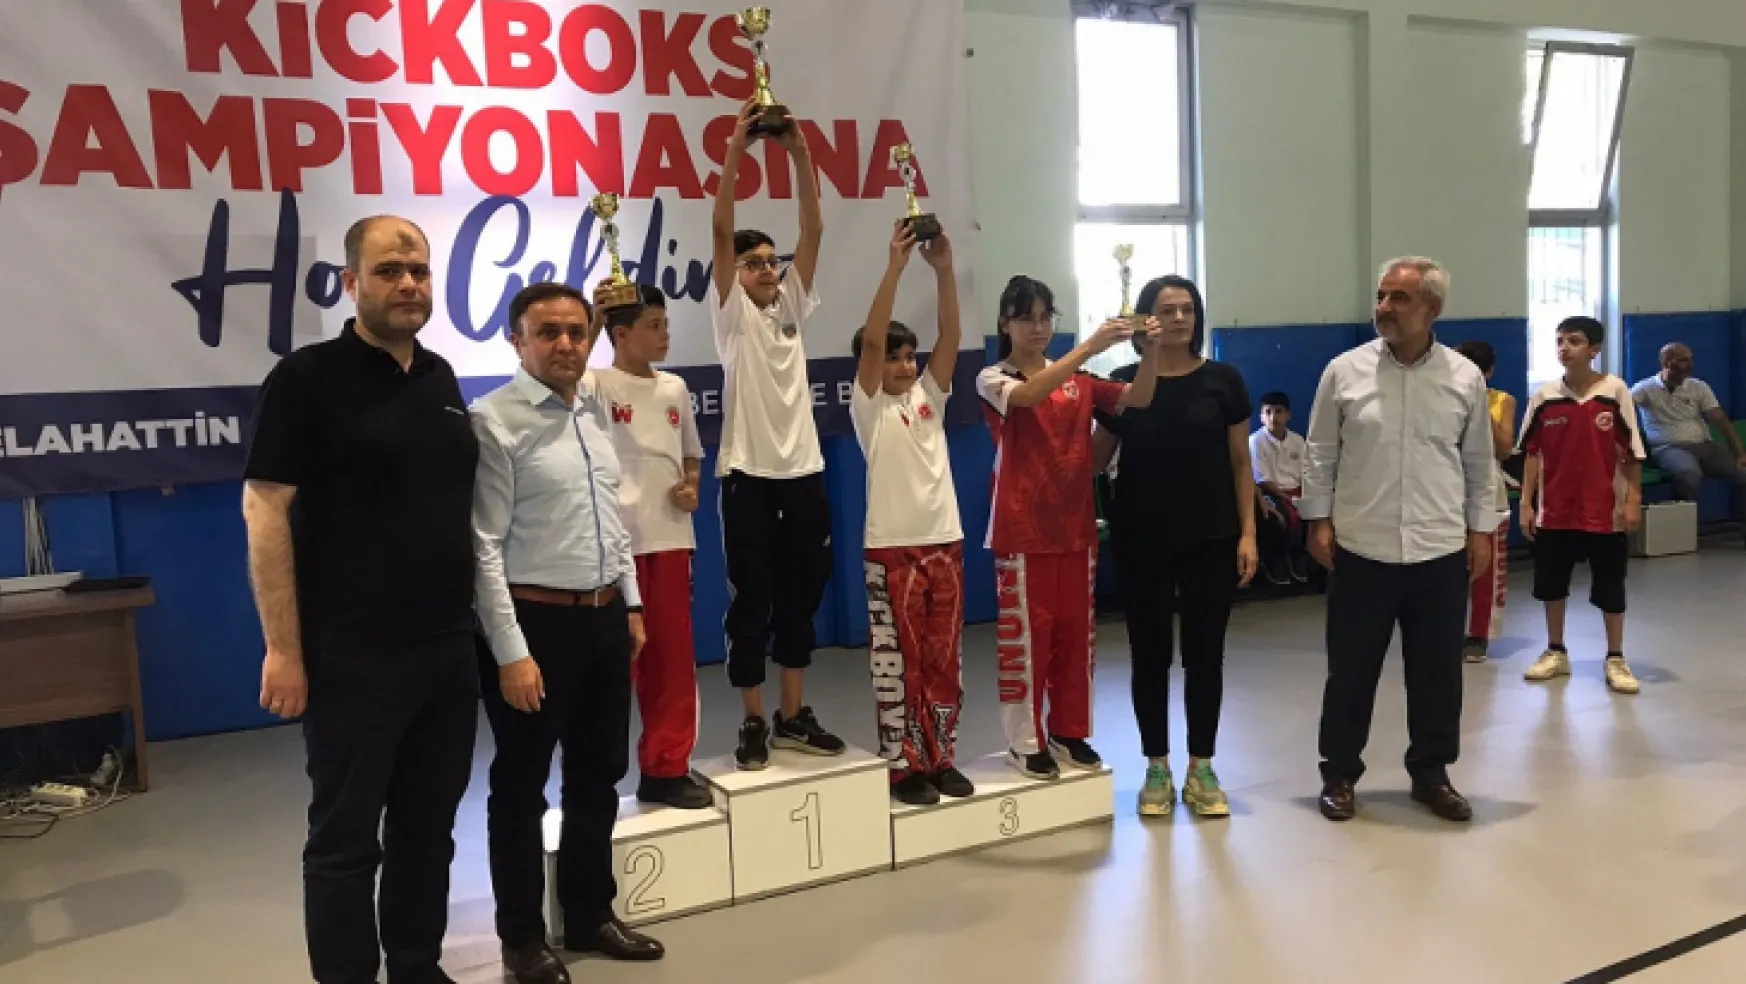 Büyükşehir Belediye Başkanlığı Kick Boks Şampiyonası Sona Erdi